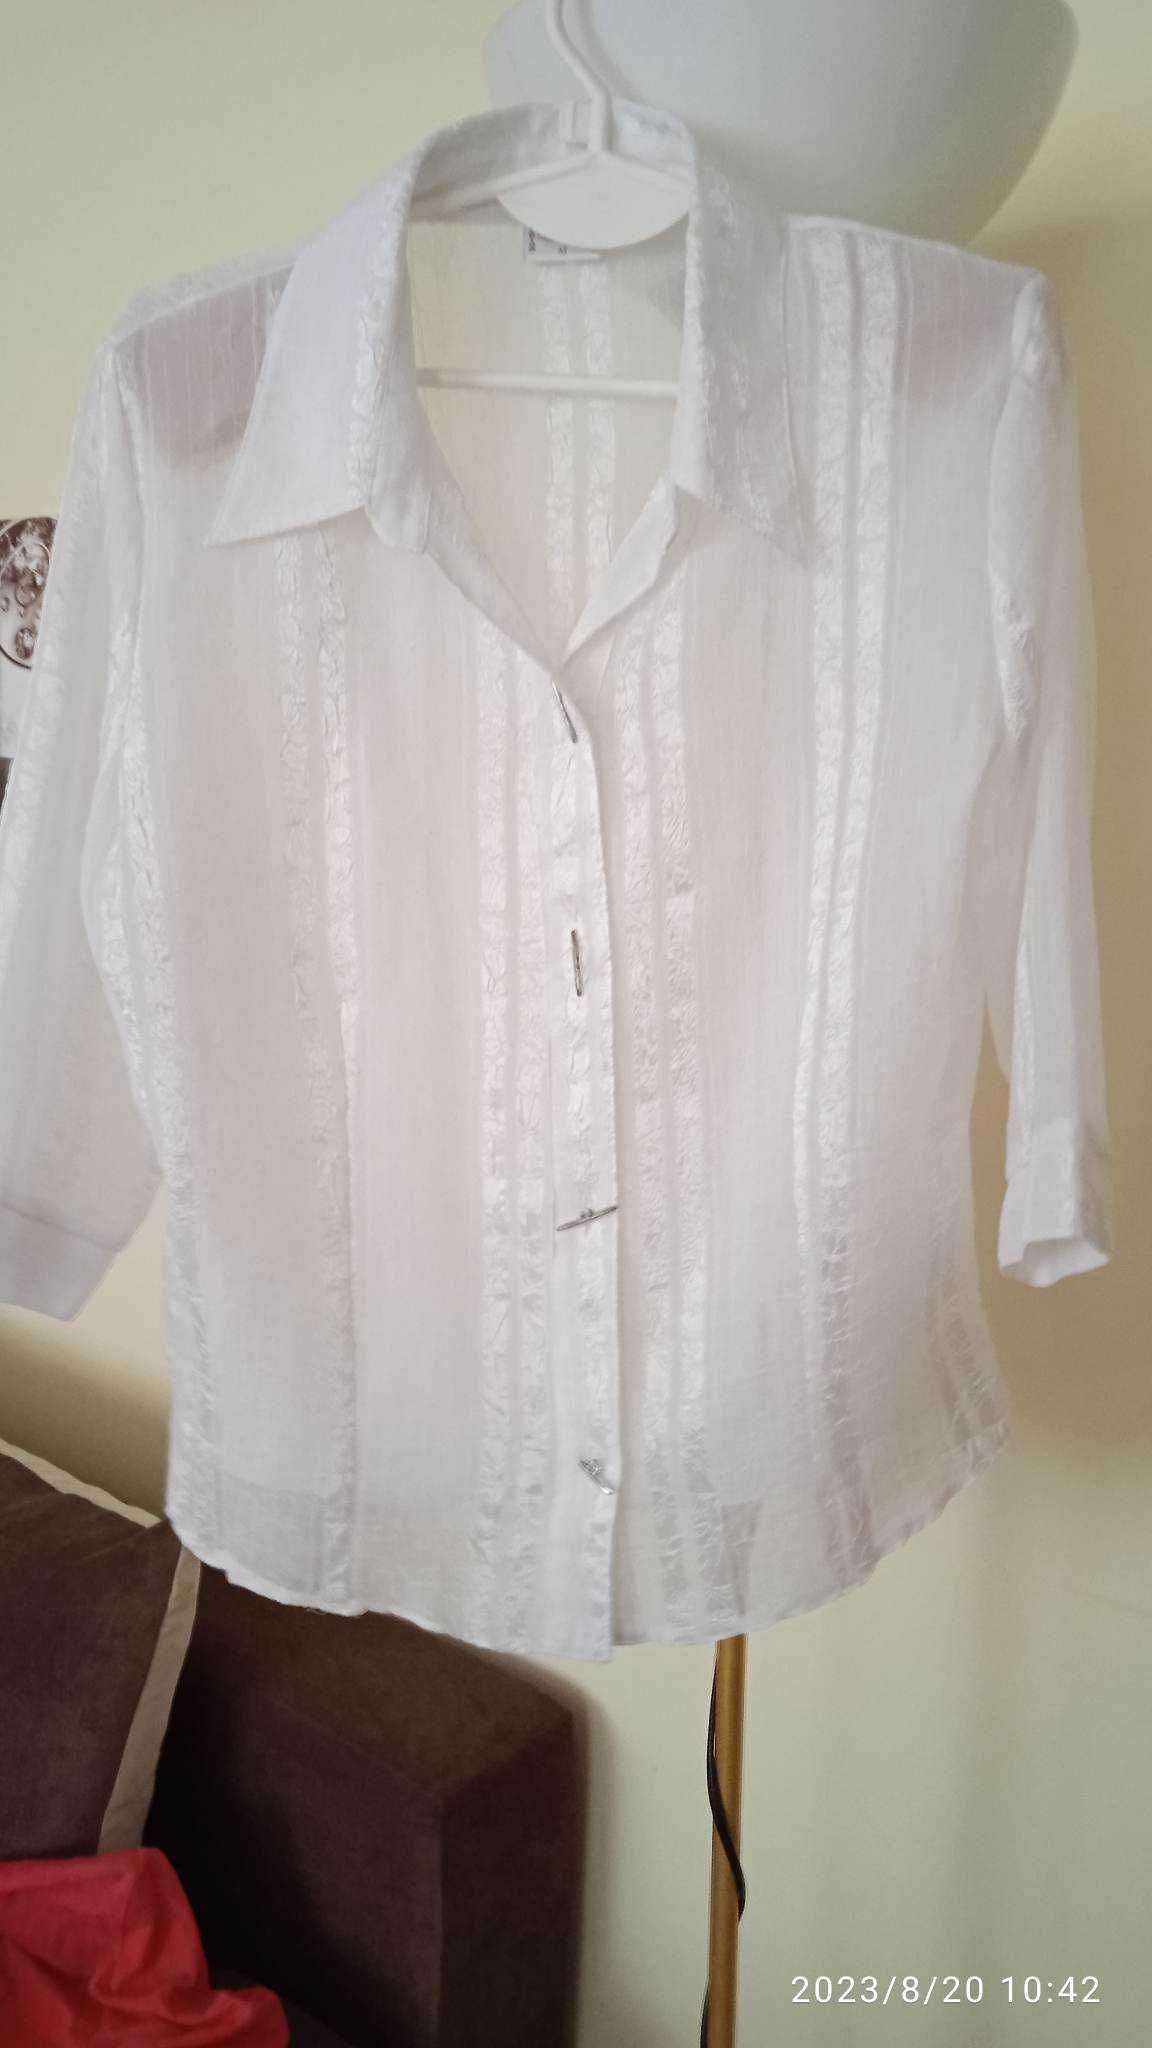 Biała koszula elegancka pod żakiety,sweterki-42/XL